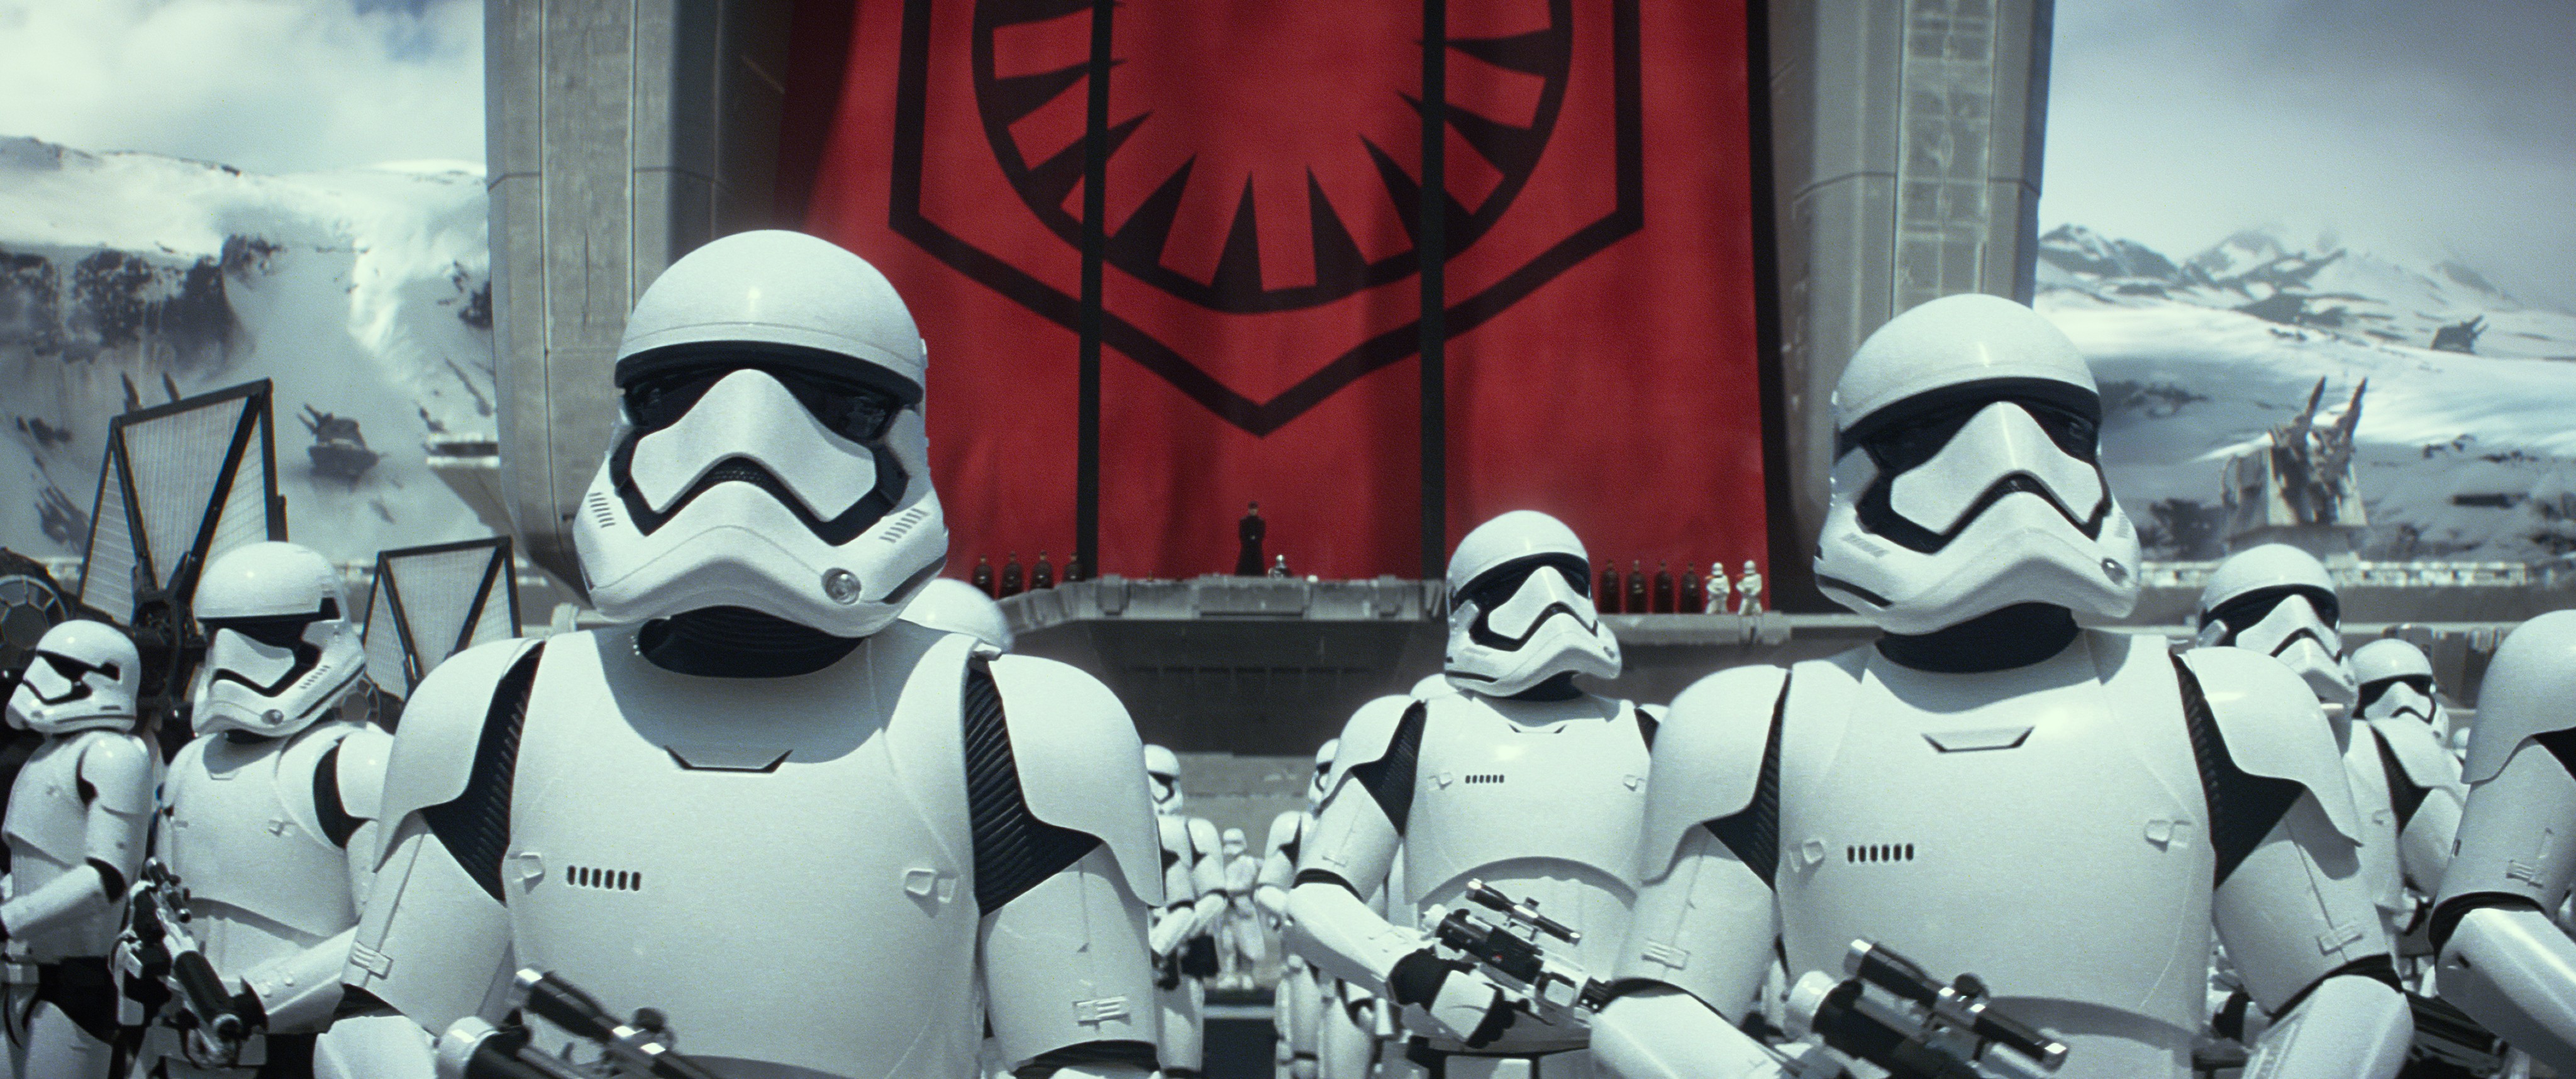 Stormtroopers prontos para o ataque (Foto: Divulgação)